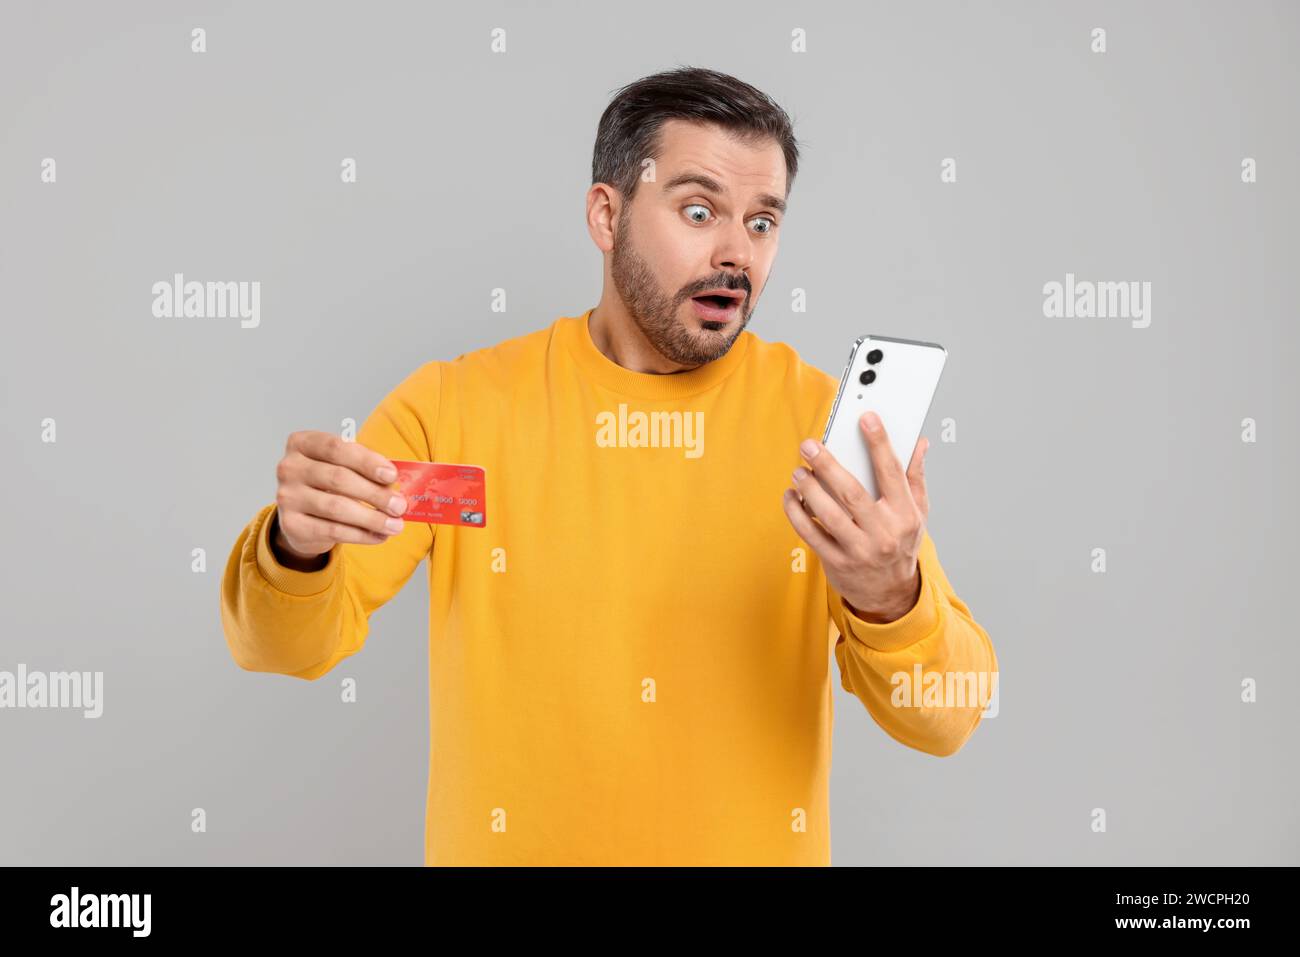 Homme choqué avec carte de crédit et smartphone sur fond gris. Problème de dette Banque D'Images